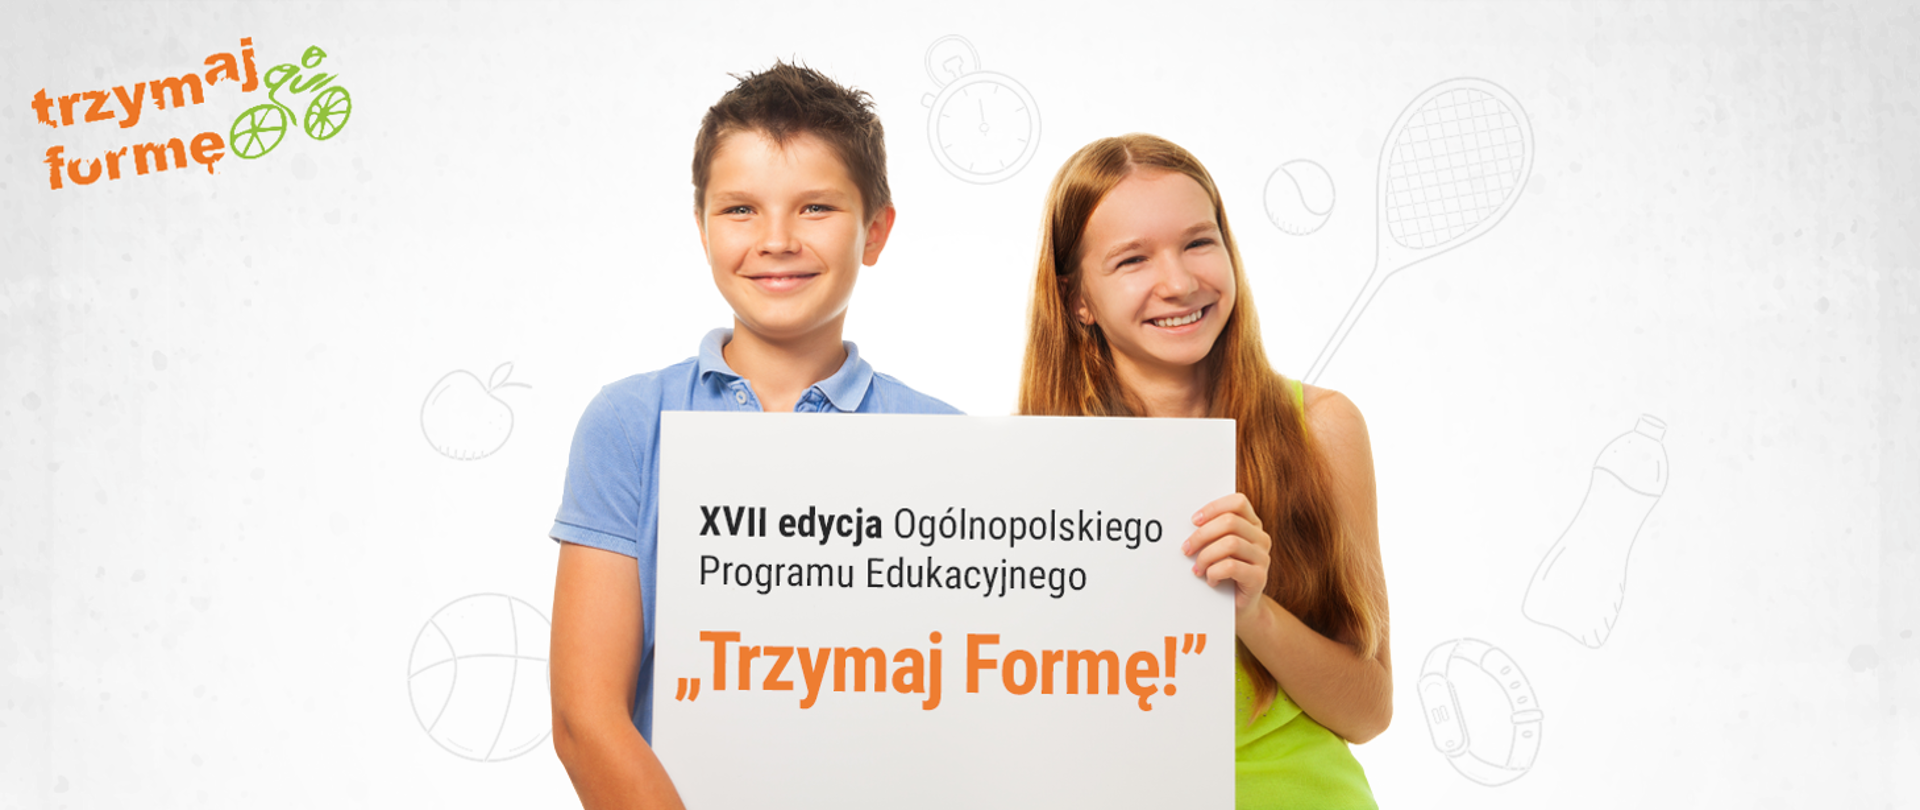 Chłopiec i dziewczynka trzymający kartkę z napisem XVII edycja Ogólnopolskiego Programu Edukacyjnego "Trzymaj Formę!"
